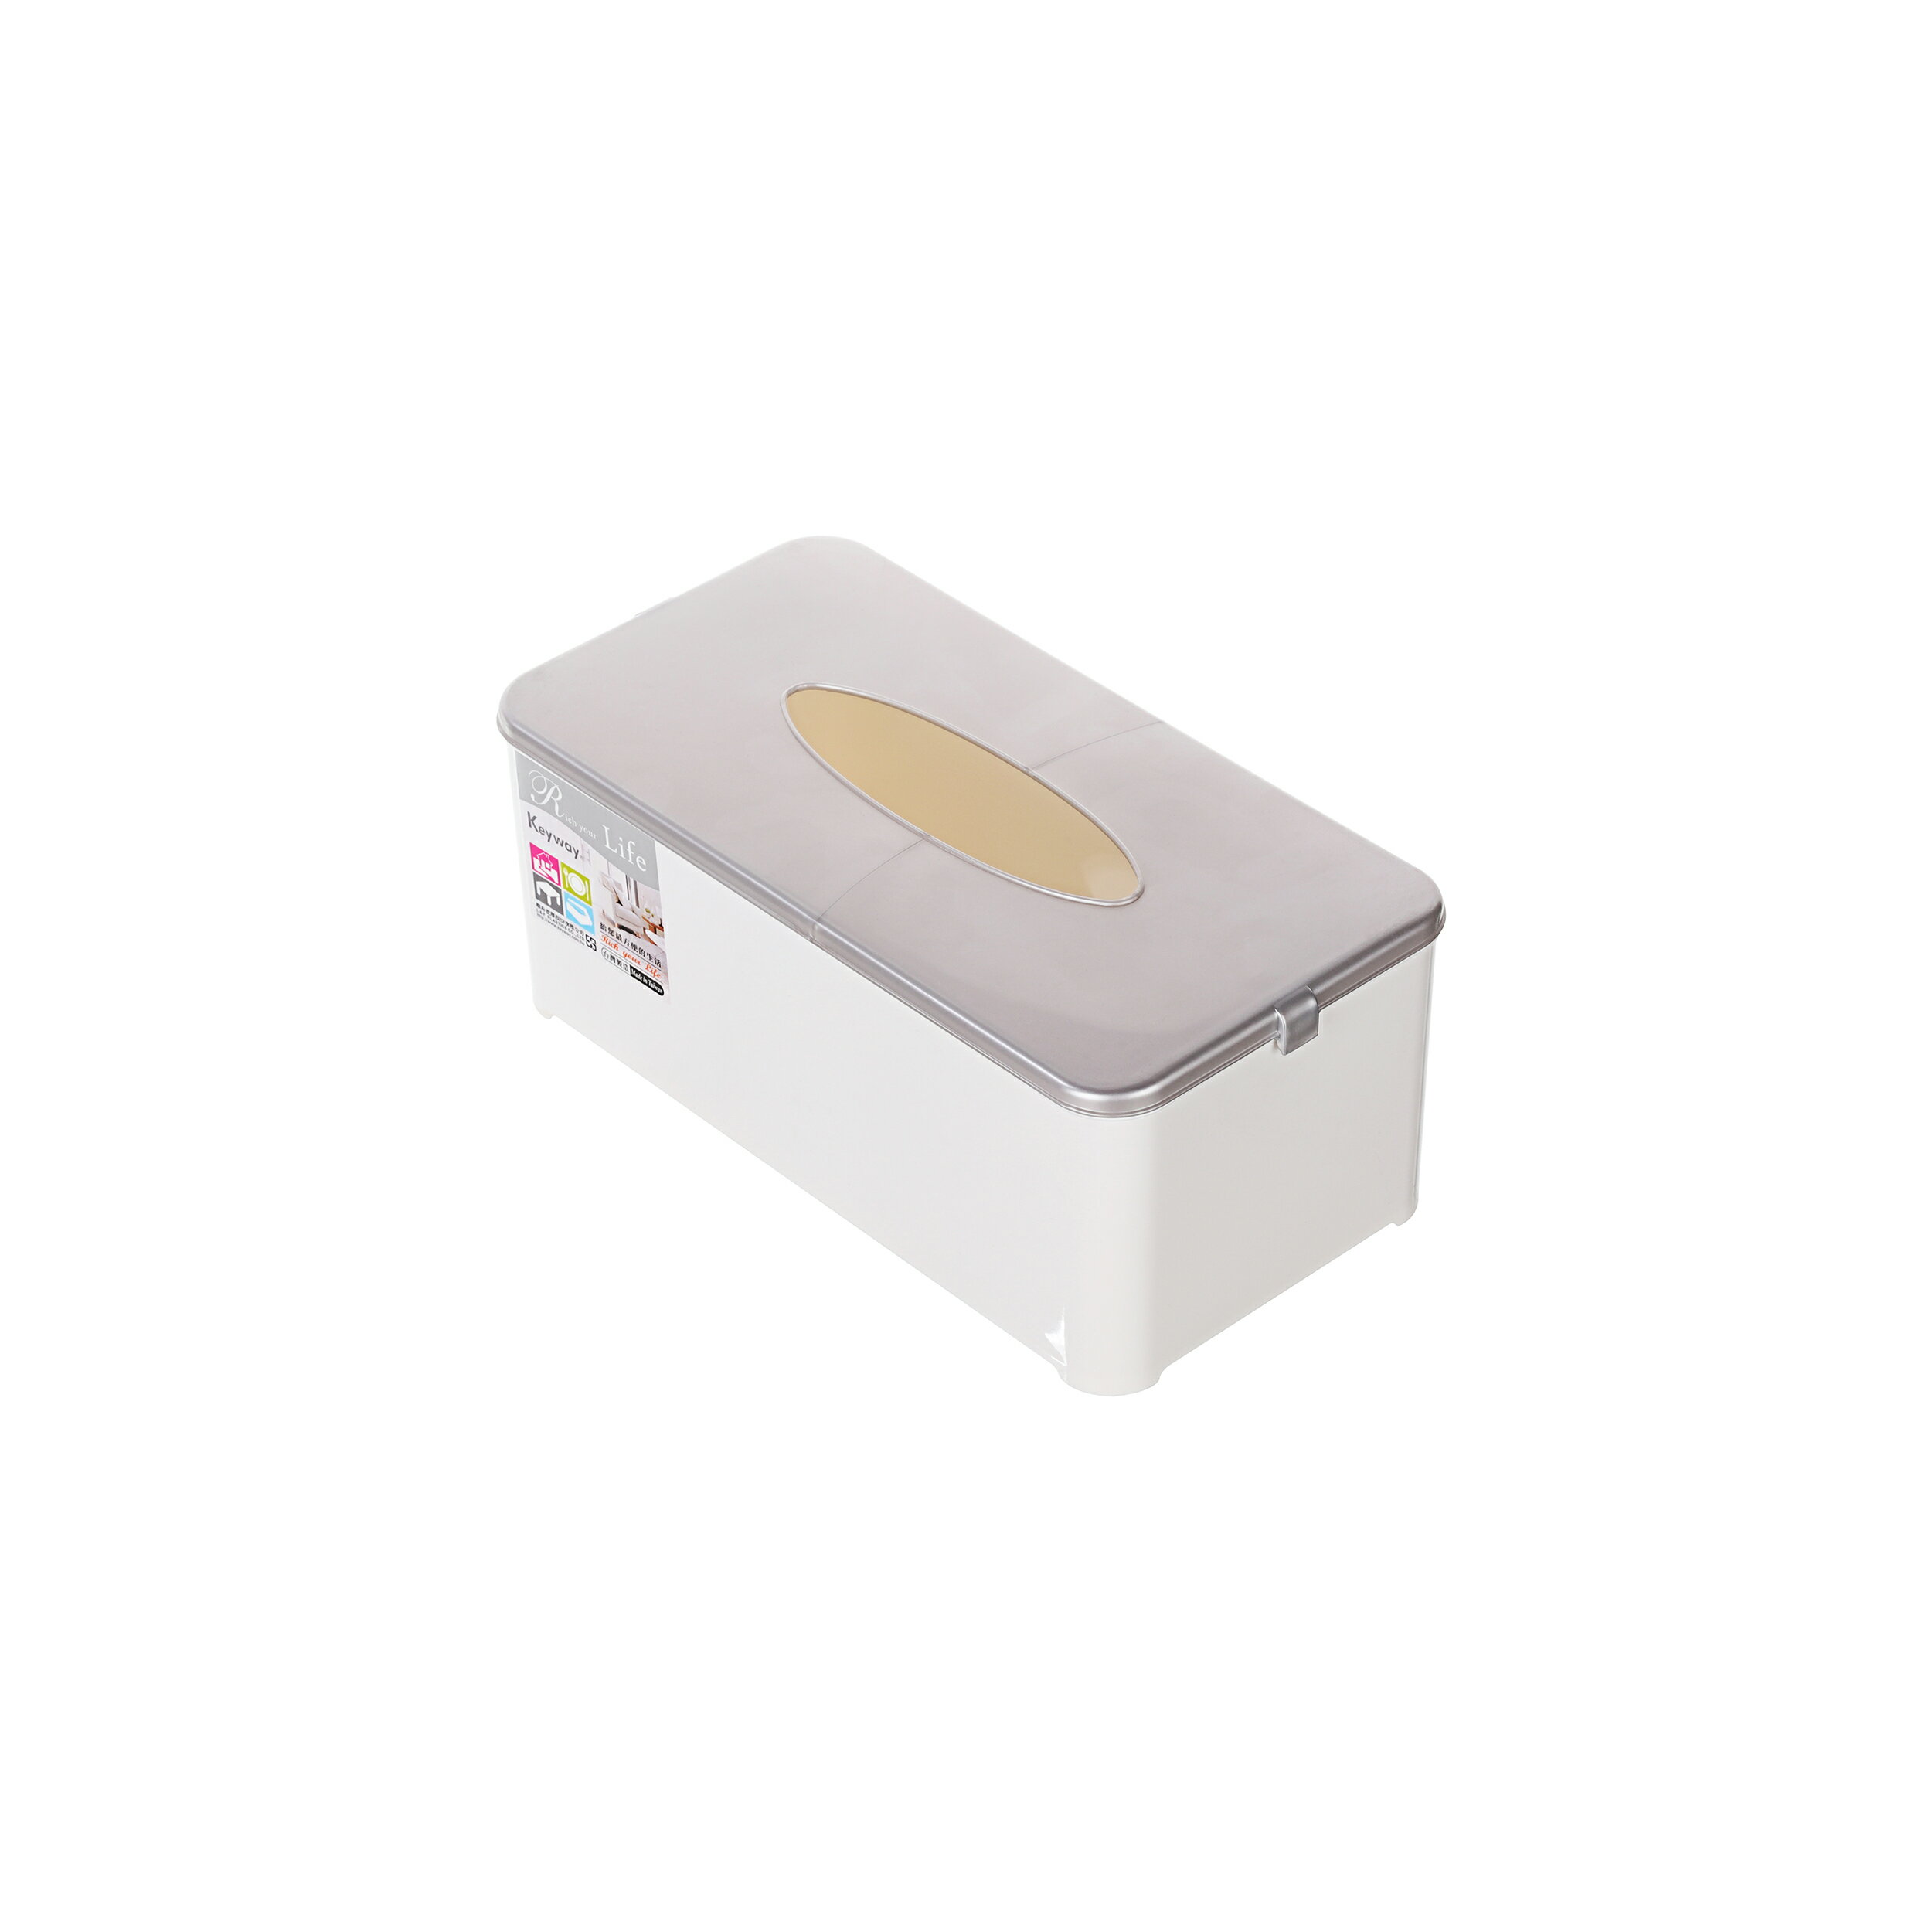 浴室周邊用品/面紙盒/MIT台灣製造   吉星面紙盒   P2-0018   KEYWAY聯府